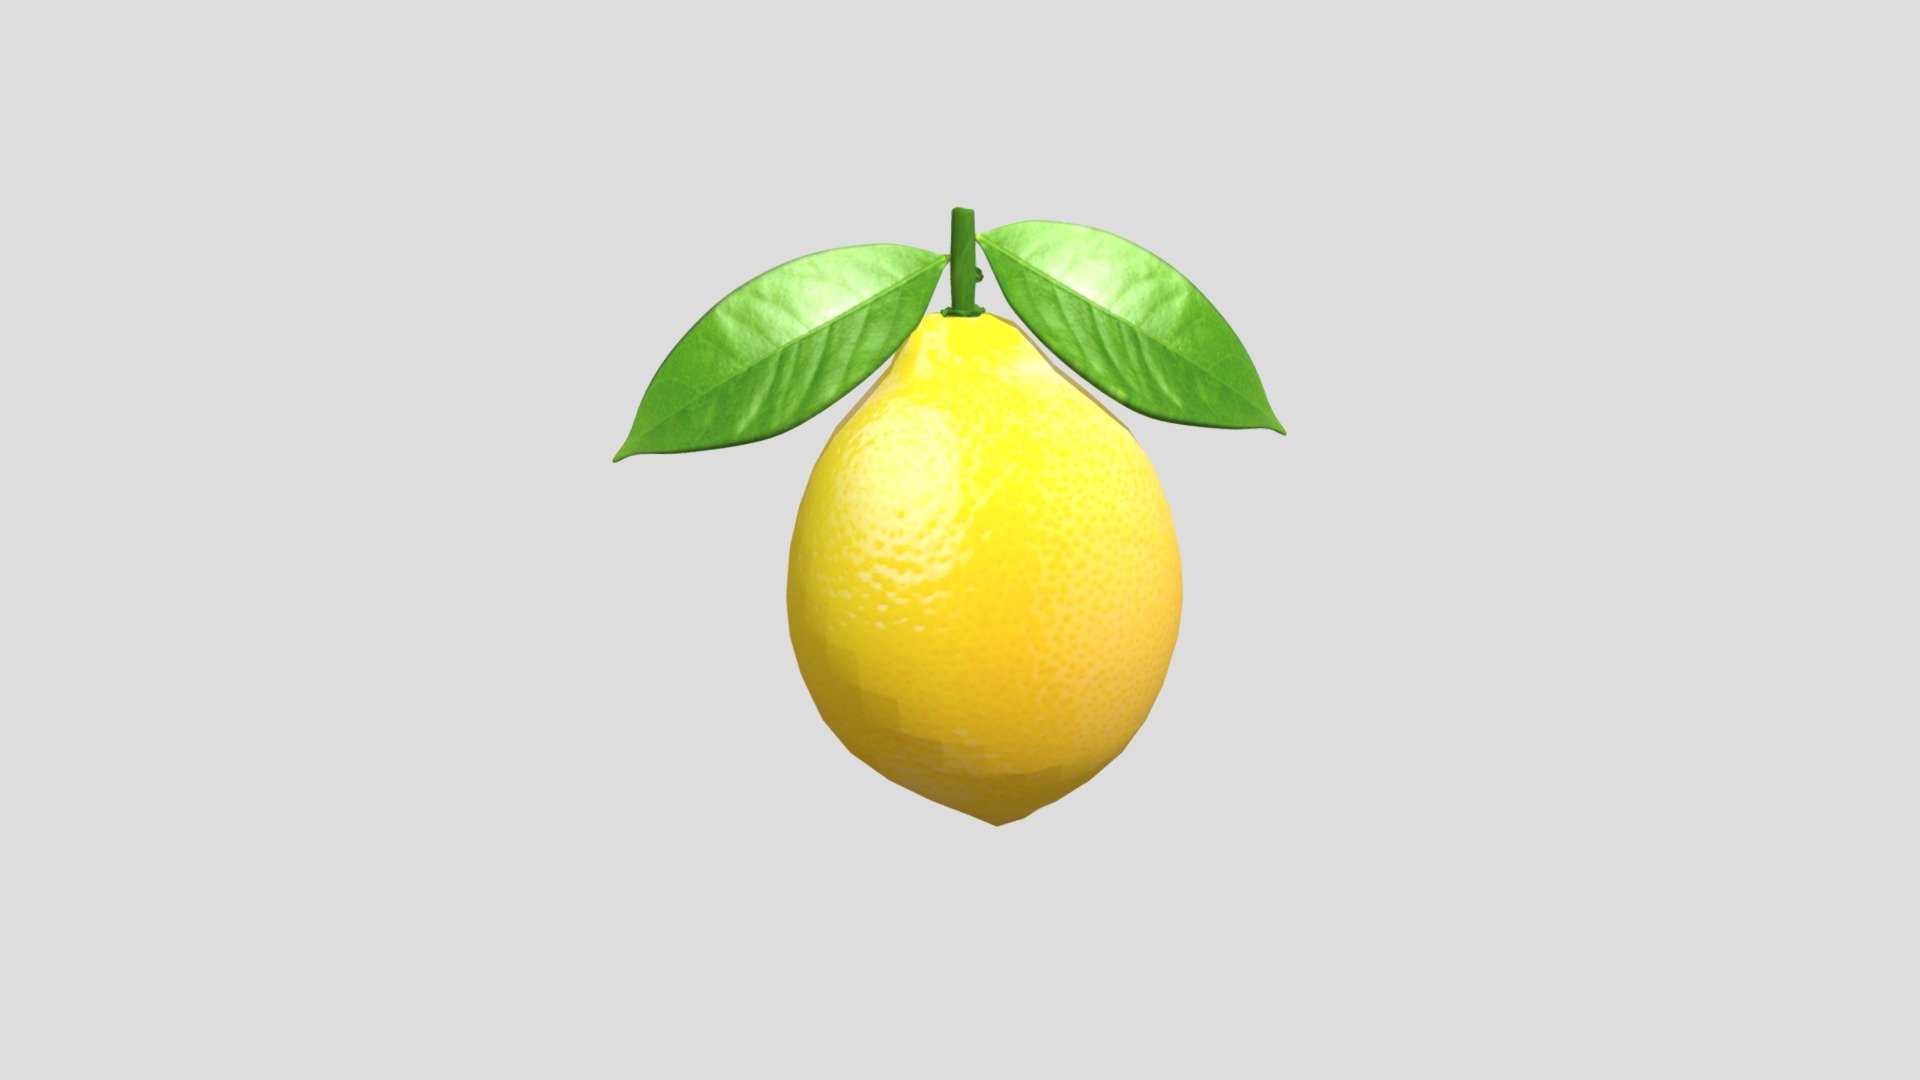 My first fruit model is the Lemon 3d model